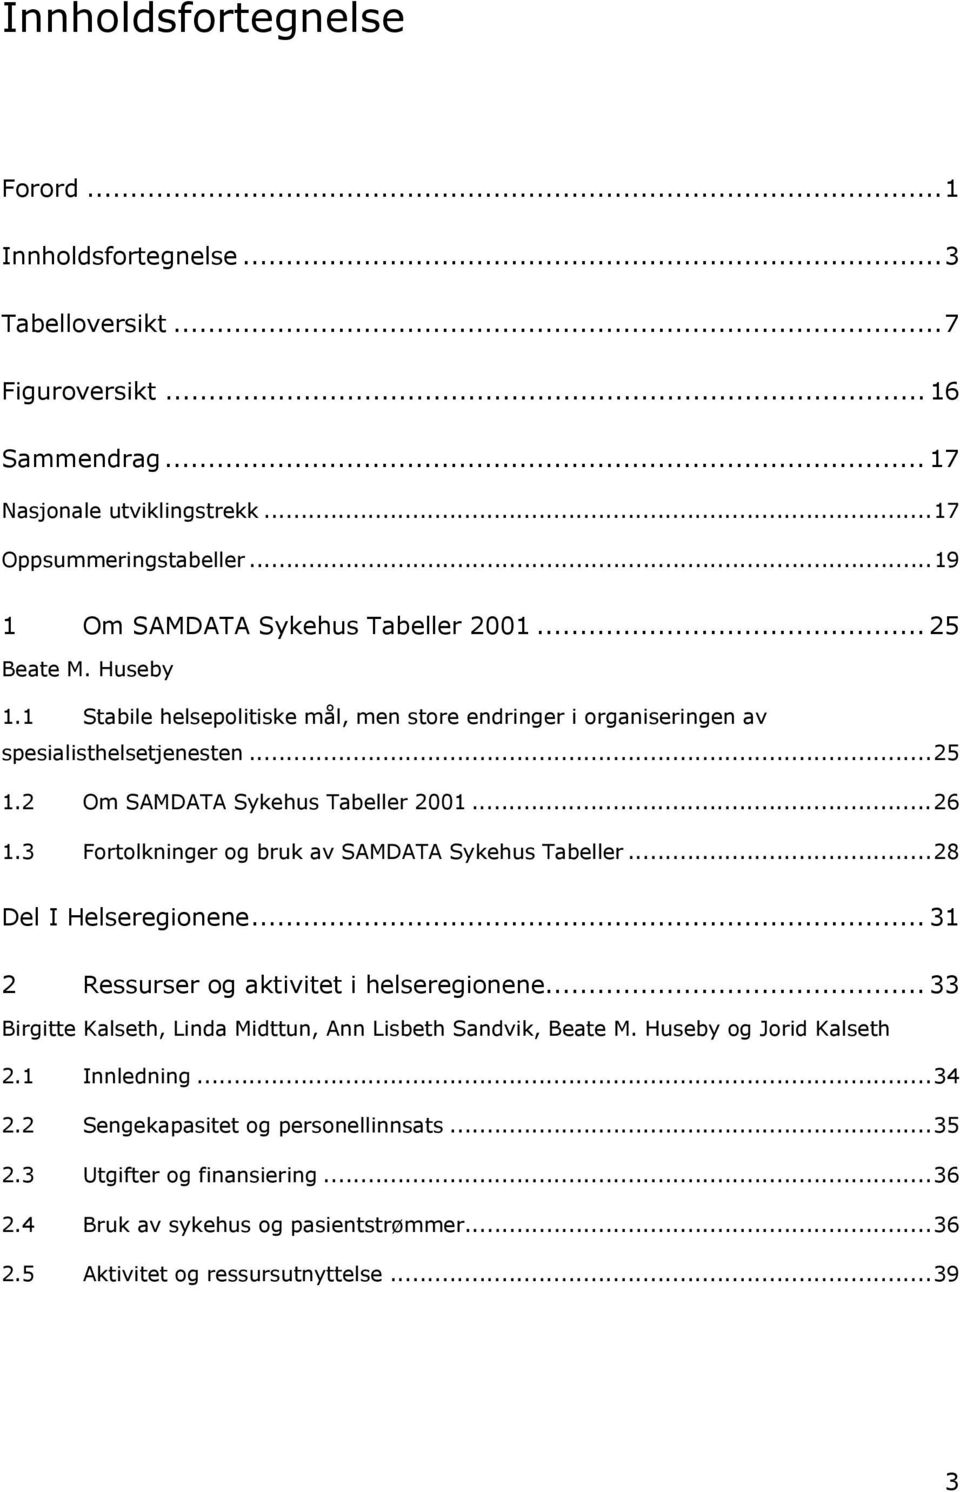 2 Om SAMDATA Sykehus Tabeller 2001...26 1.3 Fortolkninger og bruk av SAMDATA Sykehus Tabeller...28 Del I Helseregionene... 31 2 Ressurser og aktivitet i helseregionene.